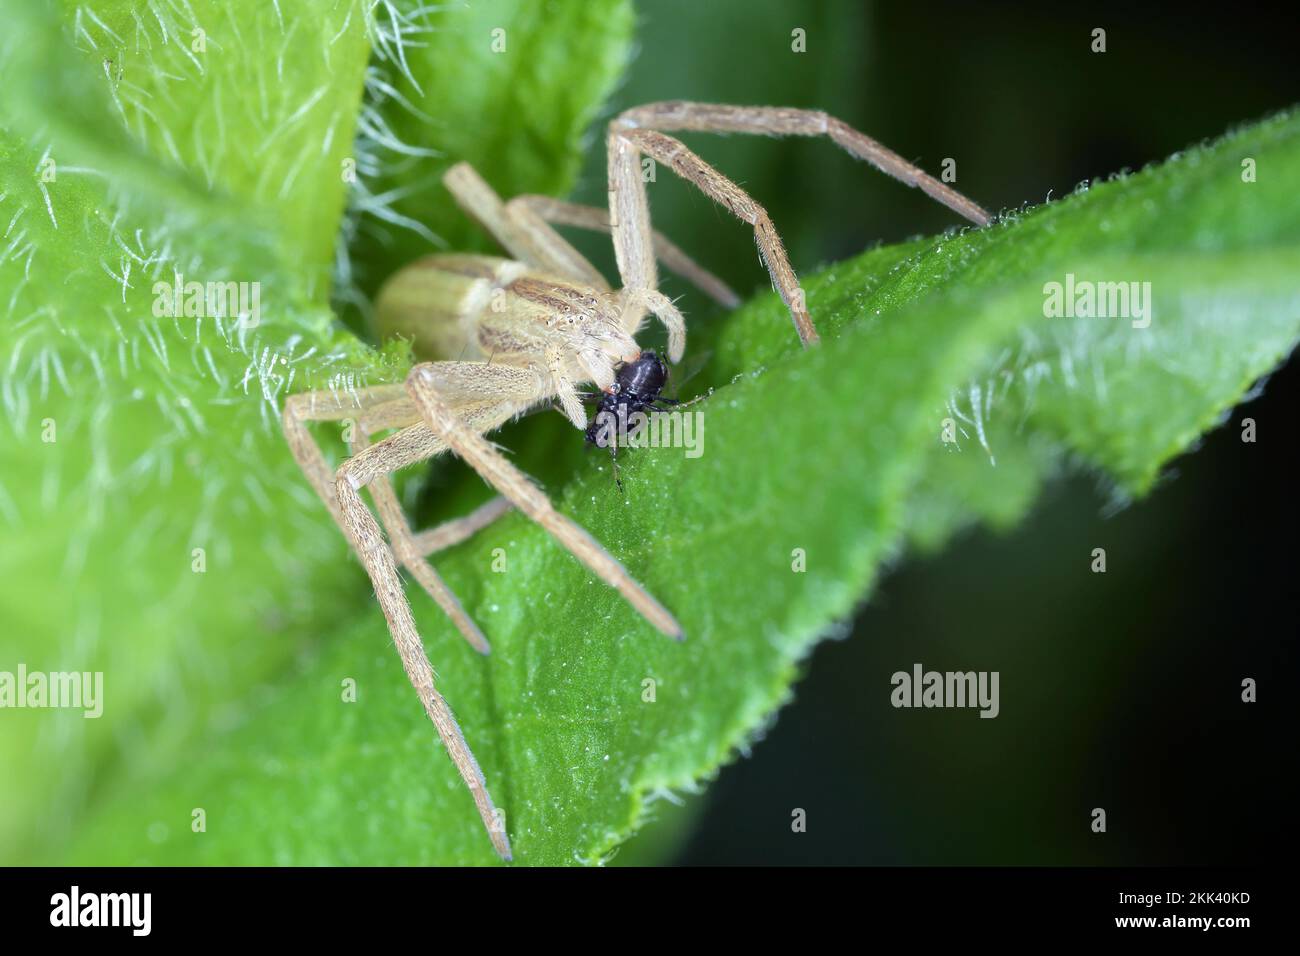 Eine Spinne, die ihre gejagte Beute frisst - eine Blattläuse. Ein natürlicher Feind von Pflanzenschädlingen in Gärten und landwirtschaftlichen Feldern. Stockfoto